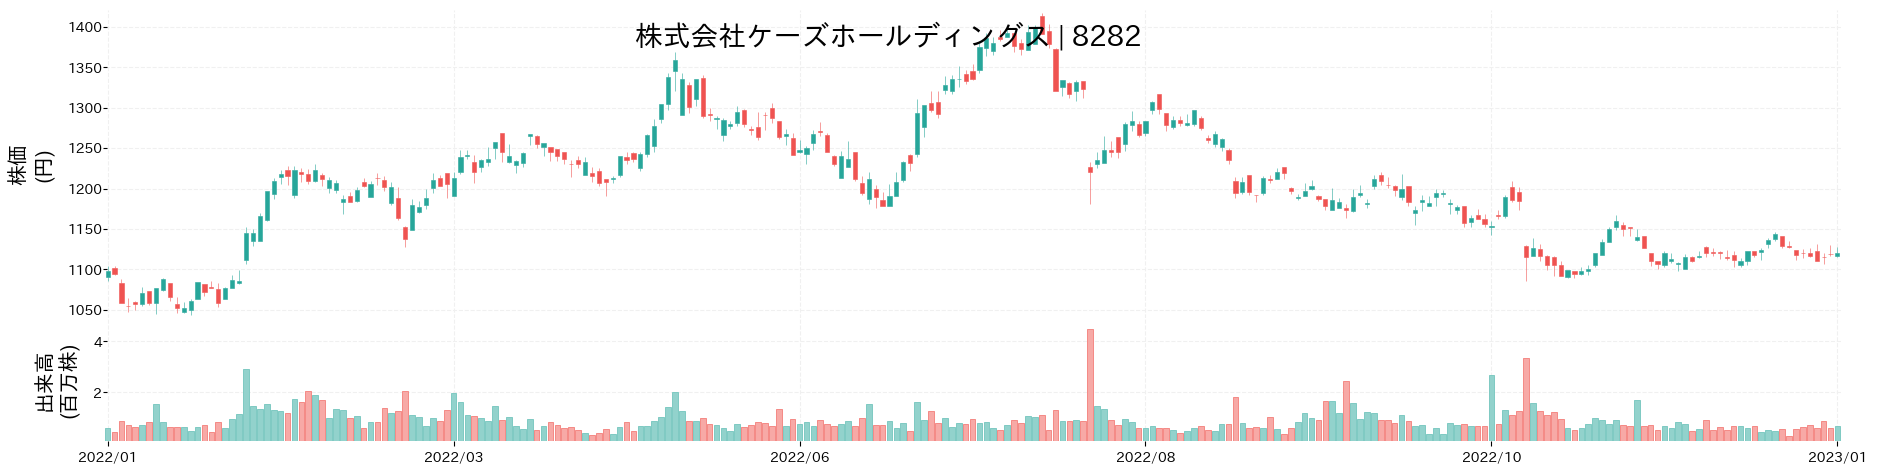 ケーズホールディングスの株価推移(2022)